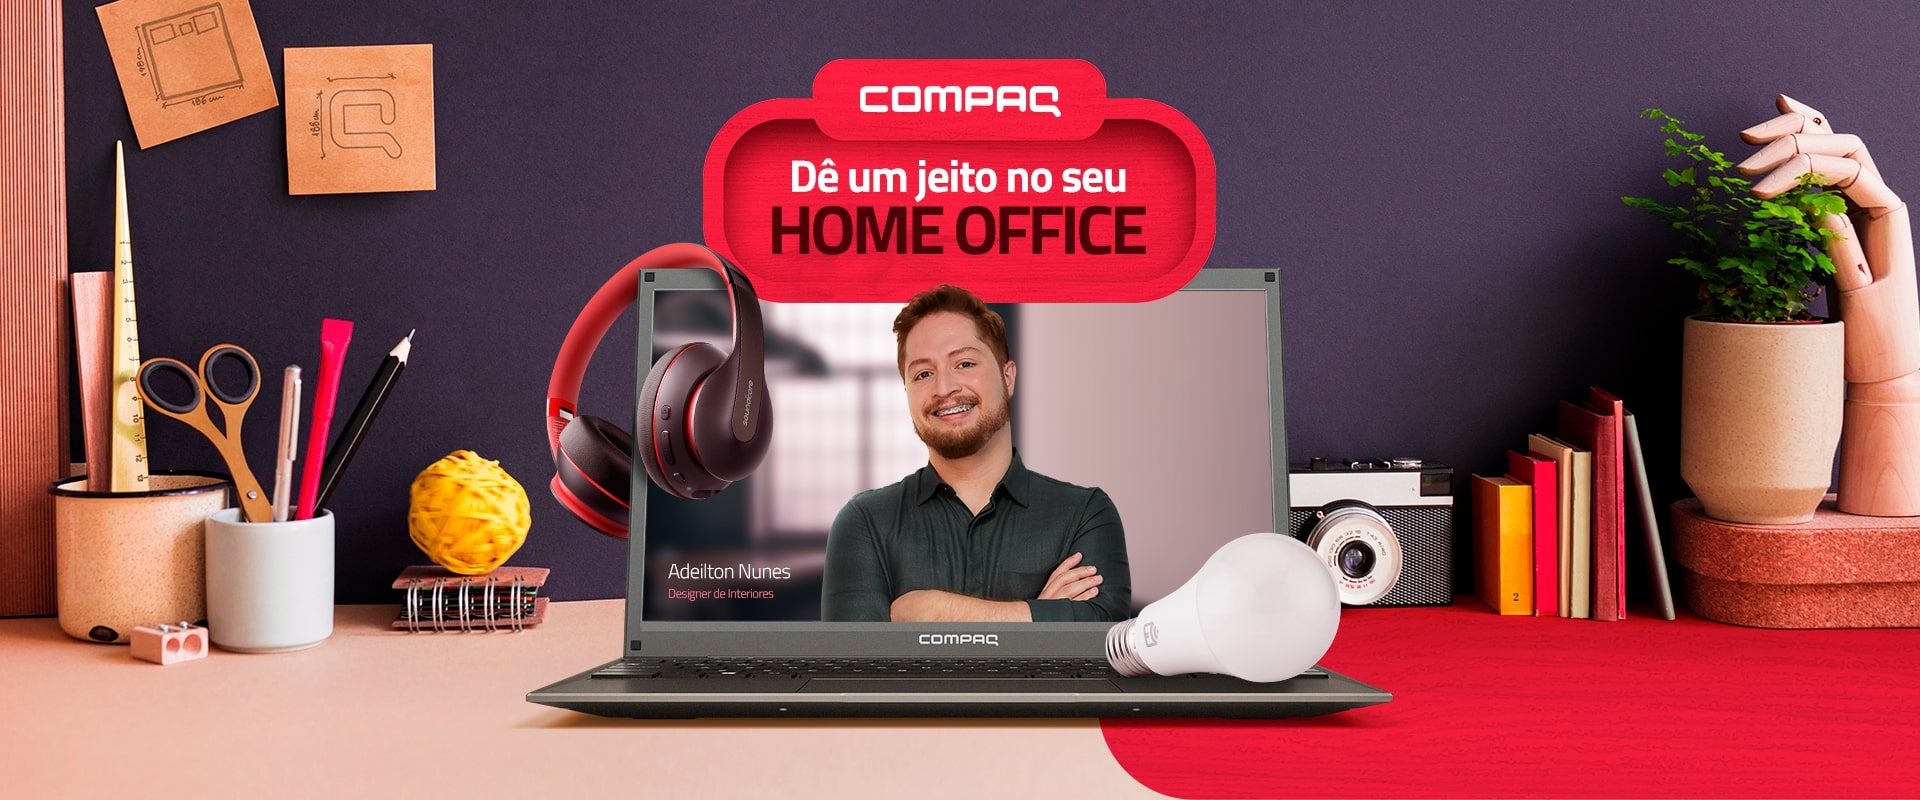 Trabalho home office freelancer renda extra - Computadores e acessórios -  Barra Funda, São Paulo 1252702771